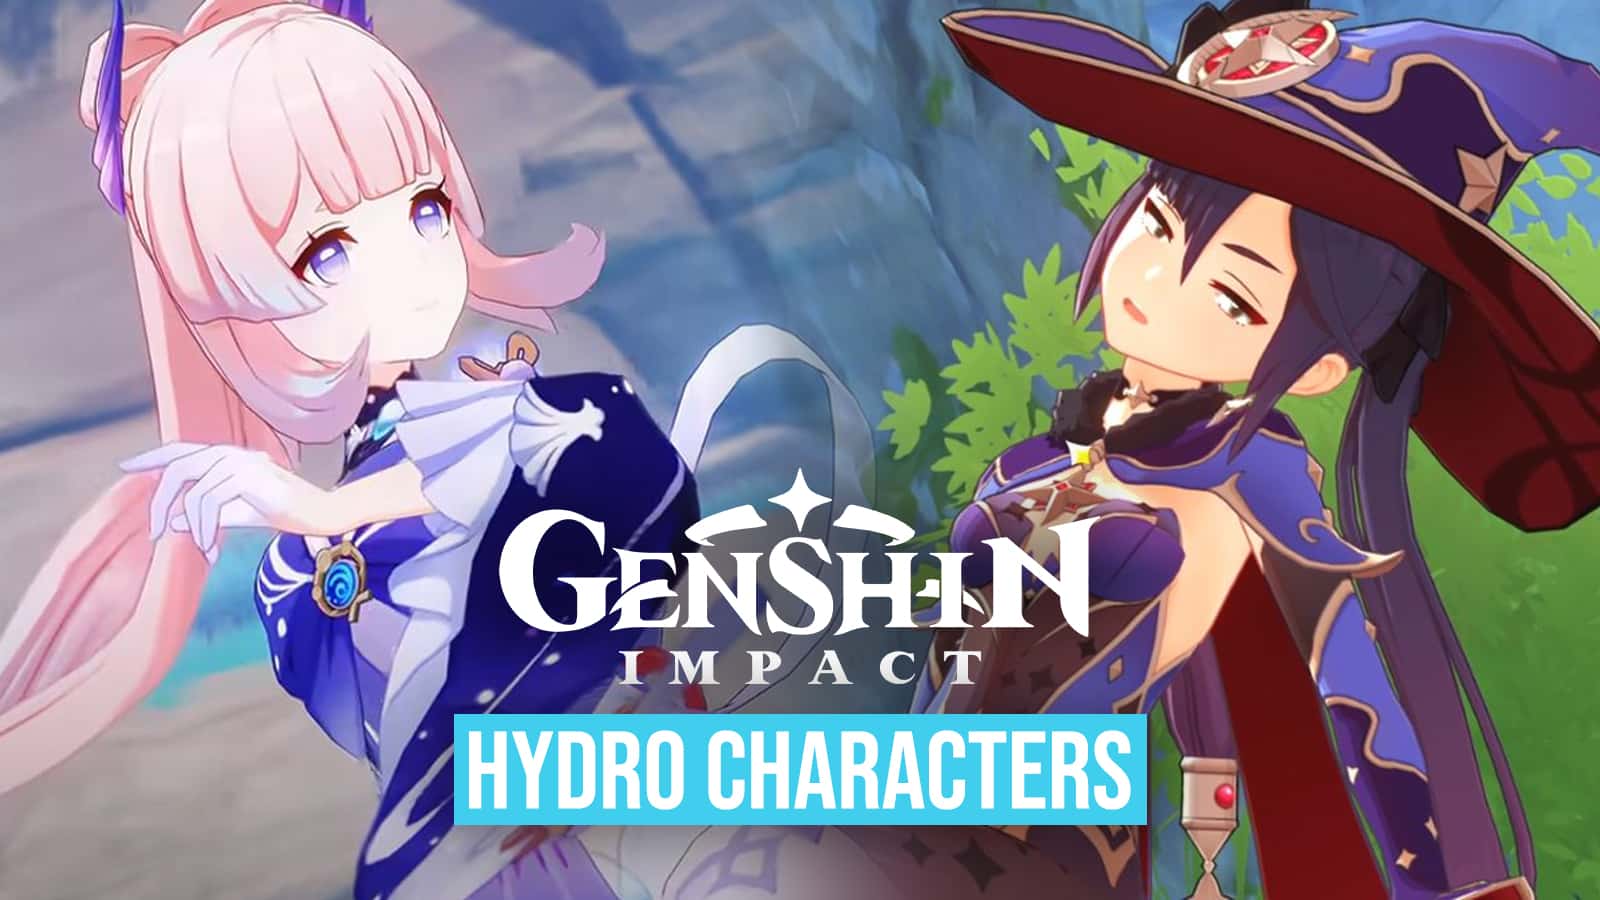 Genshin Impact Hydro karakterleri: Ayato, Kokomi, Mona ve daha fazlası